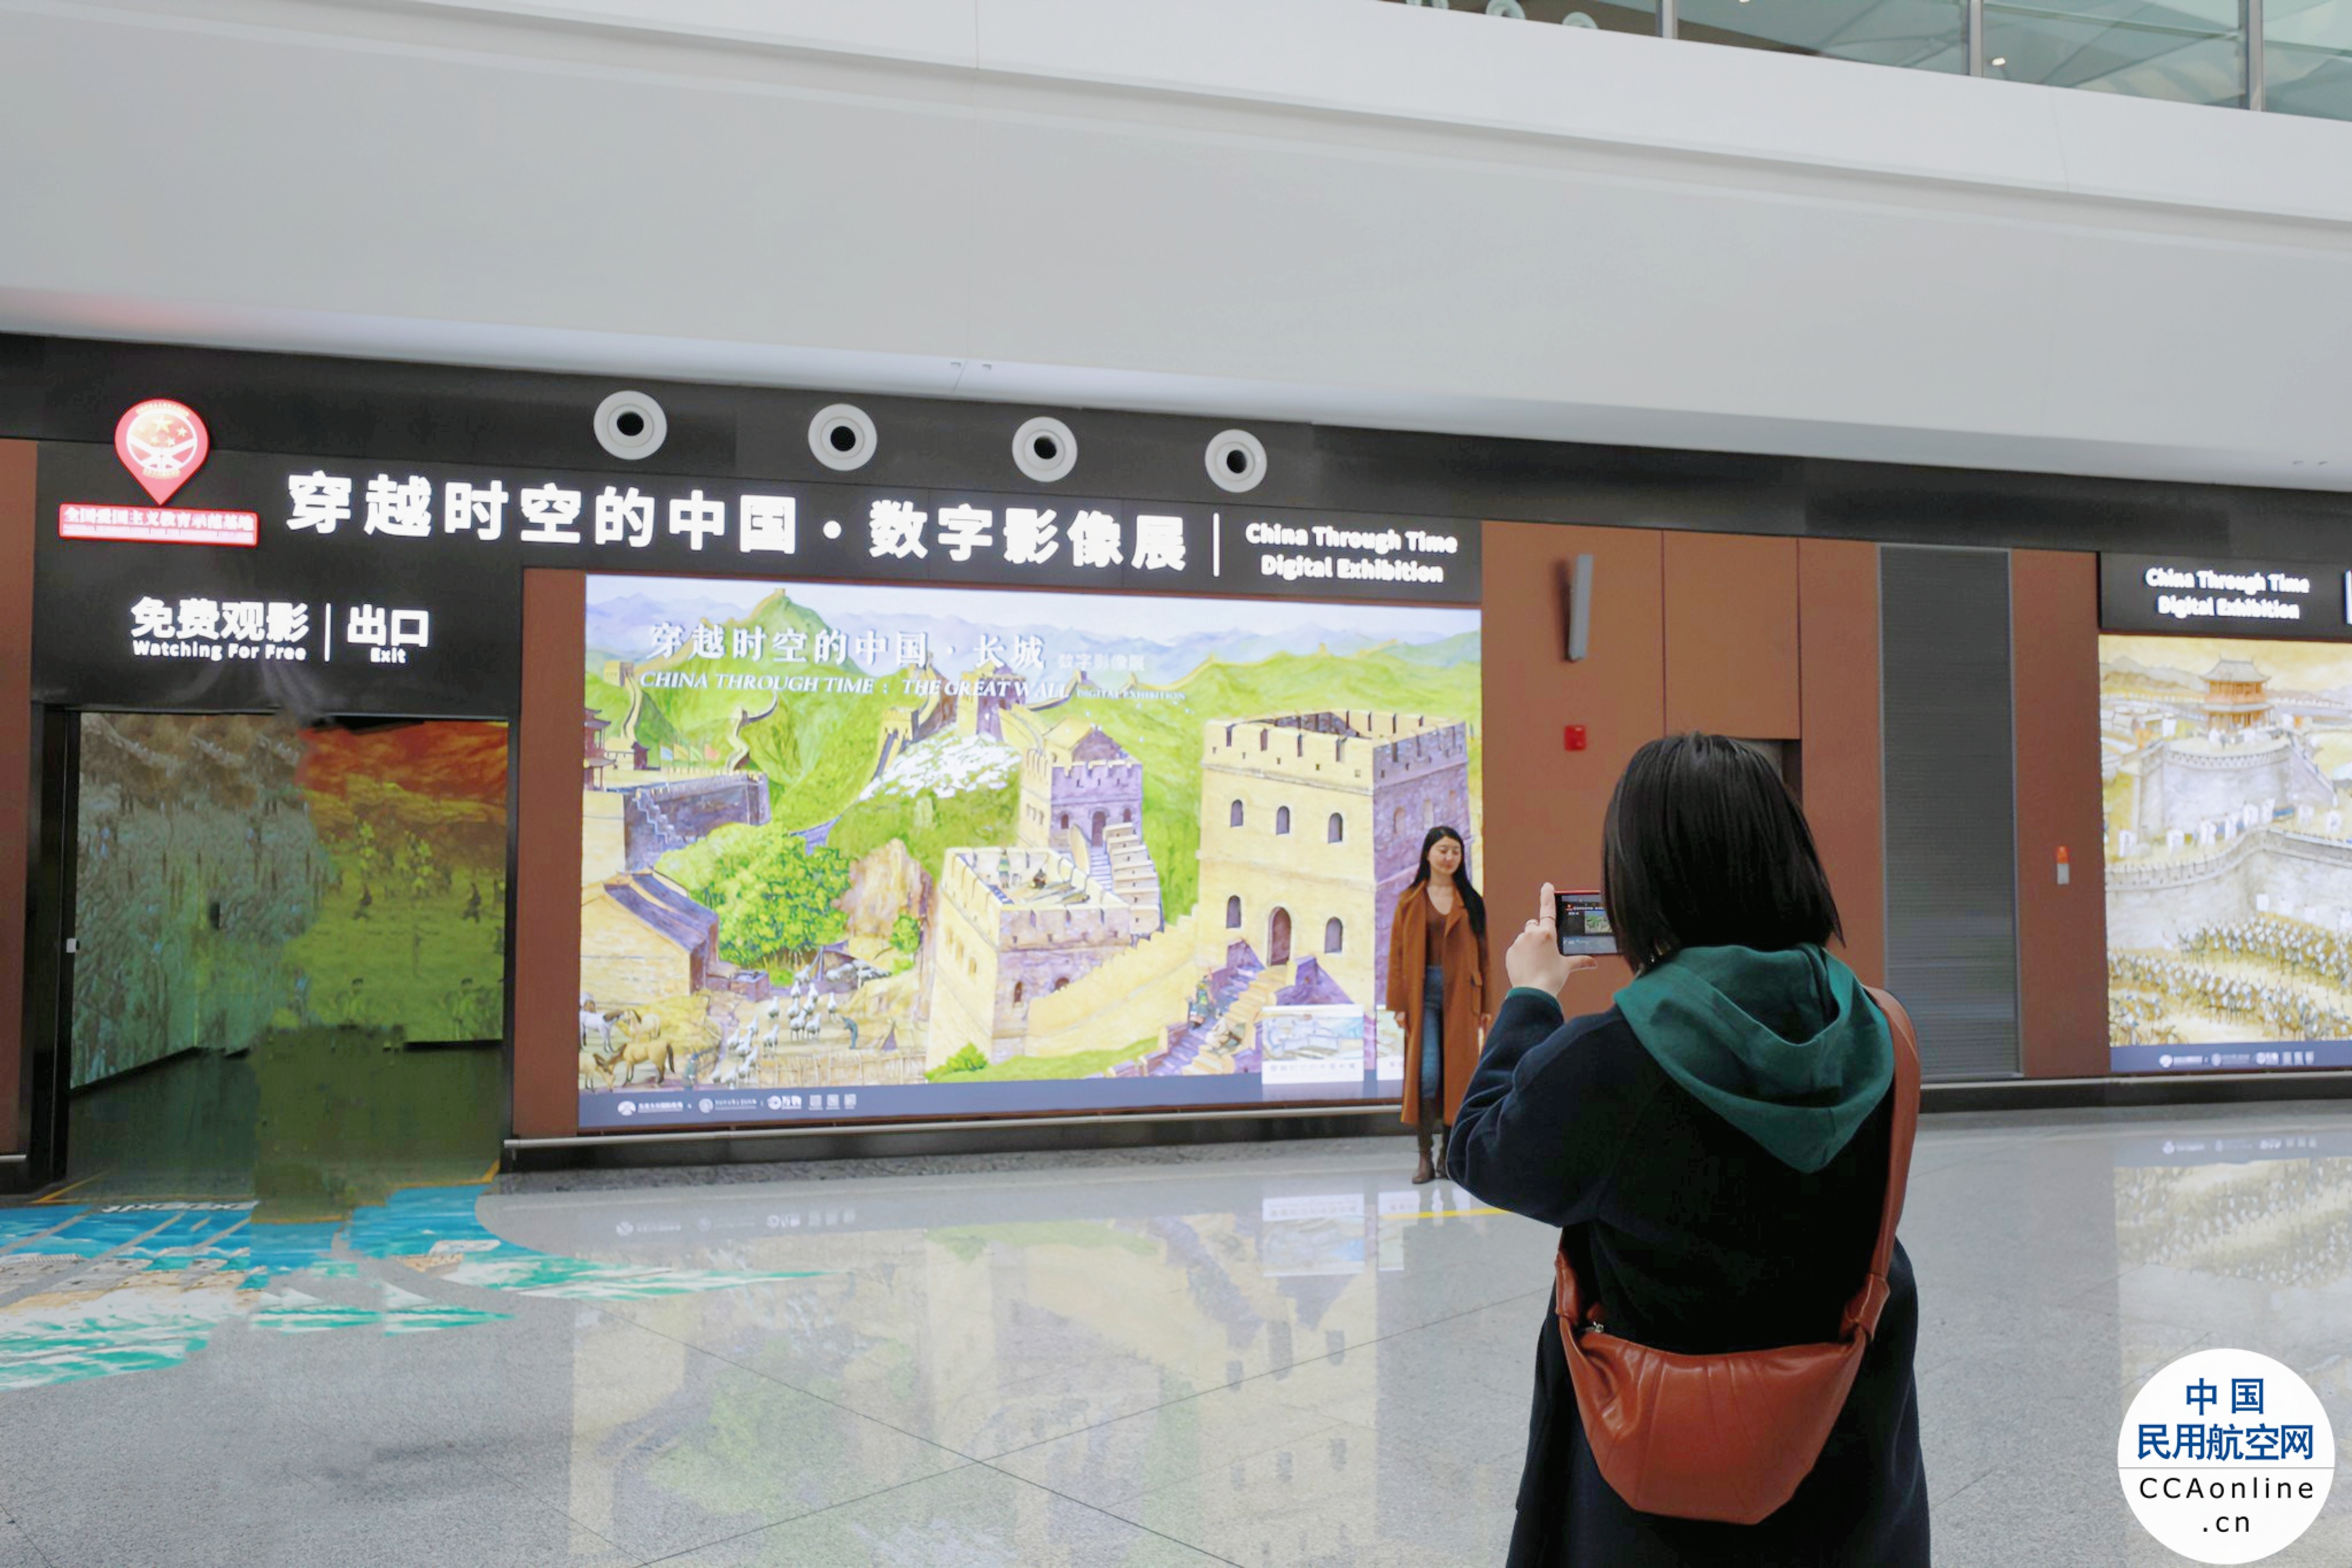 大兴机场与大百科达成战略合作 开启“穿越时空的中国”系列展映